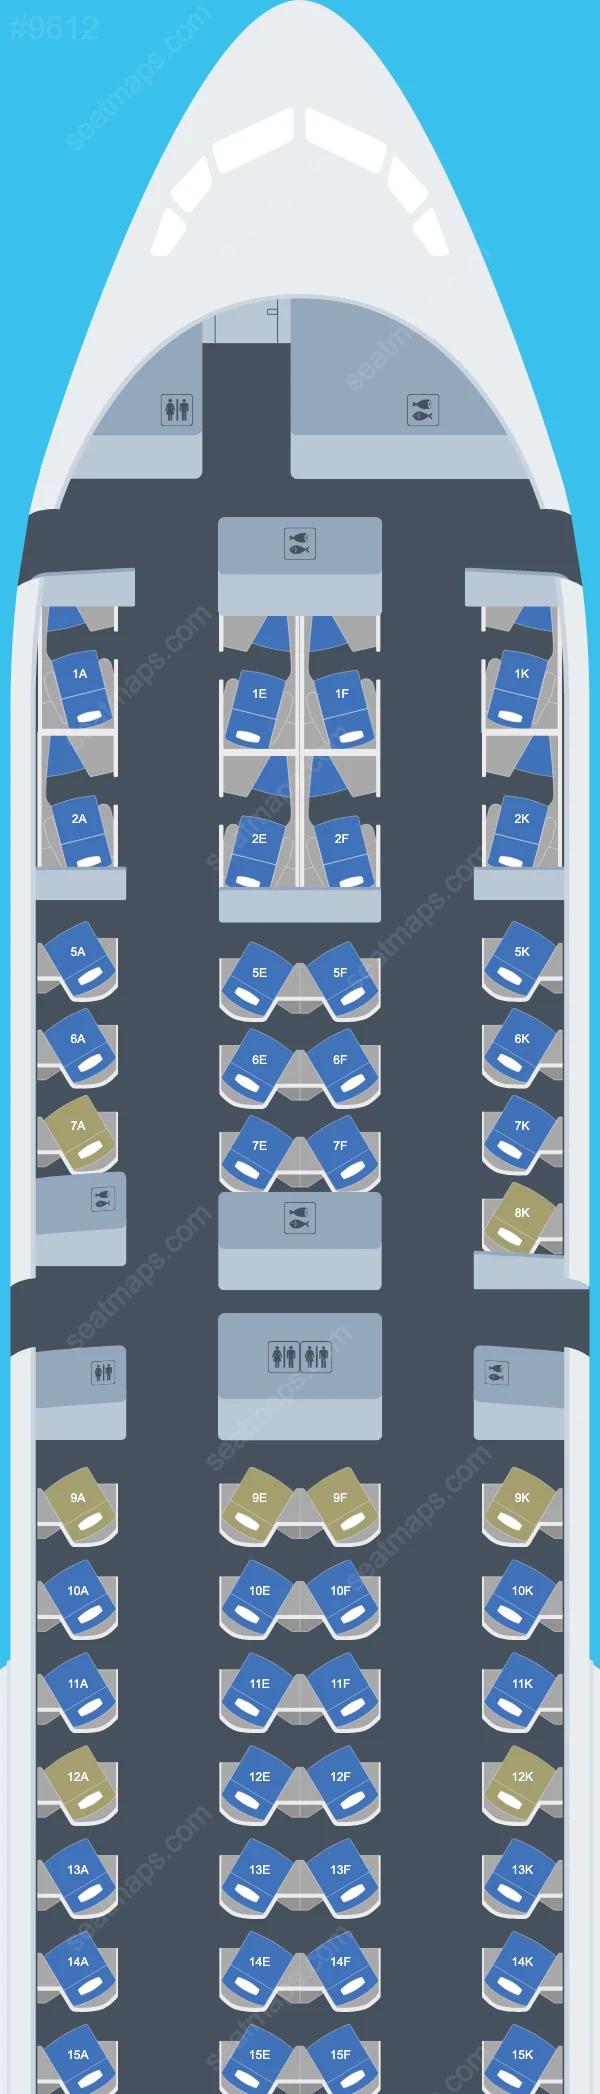 British Airways Boeing 777 Seat Maps 777-200 ER V.1